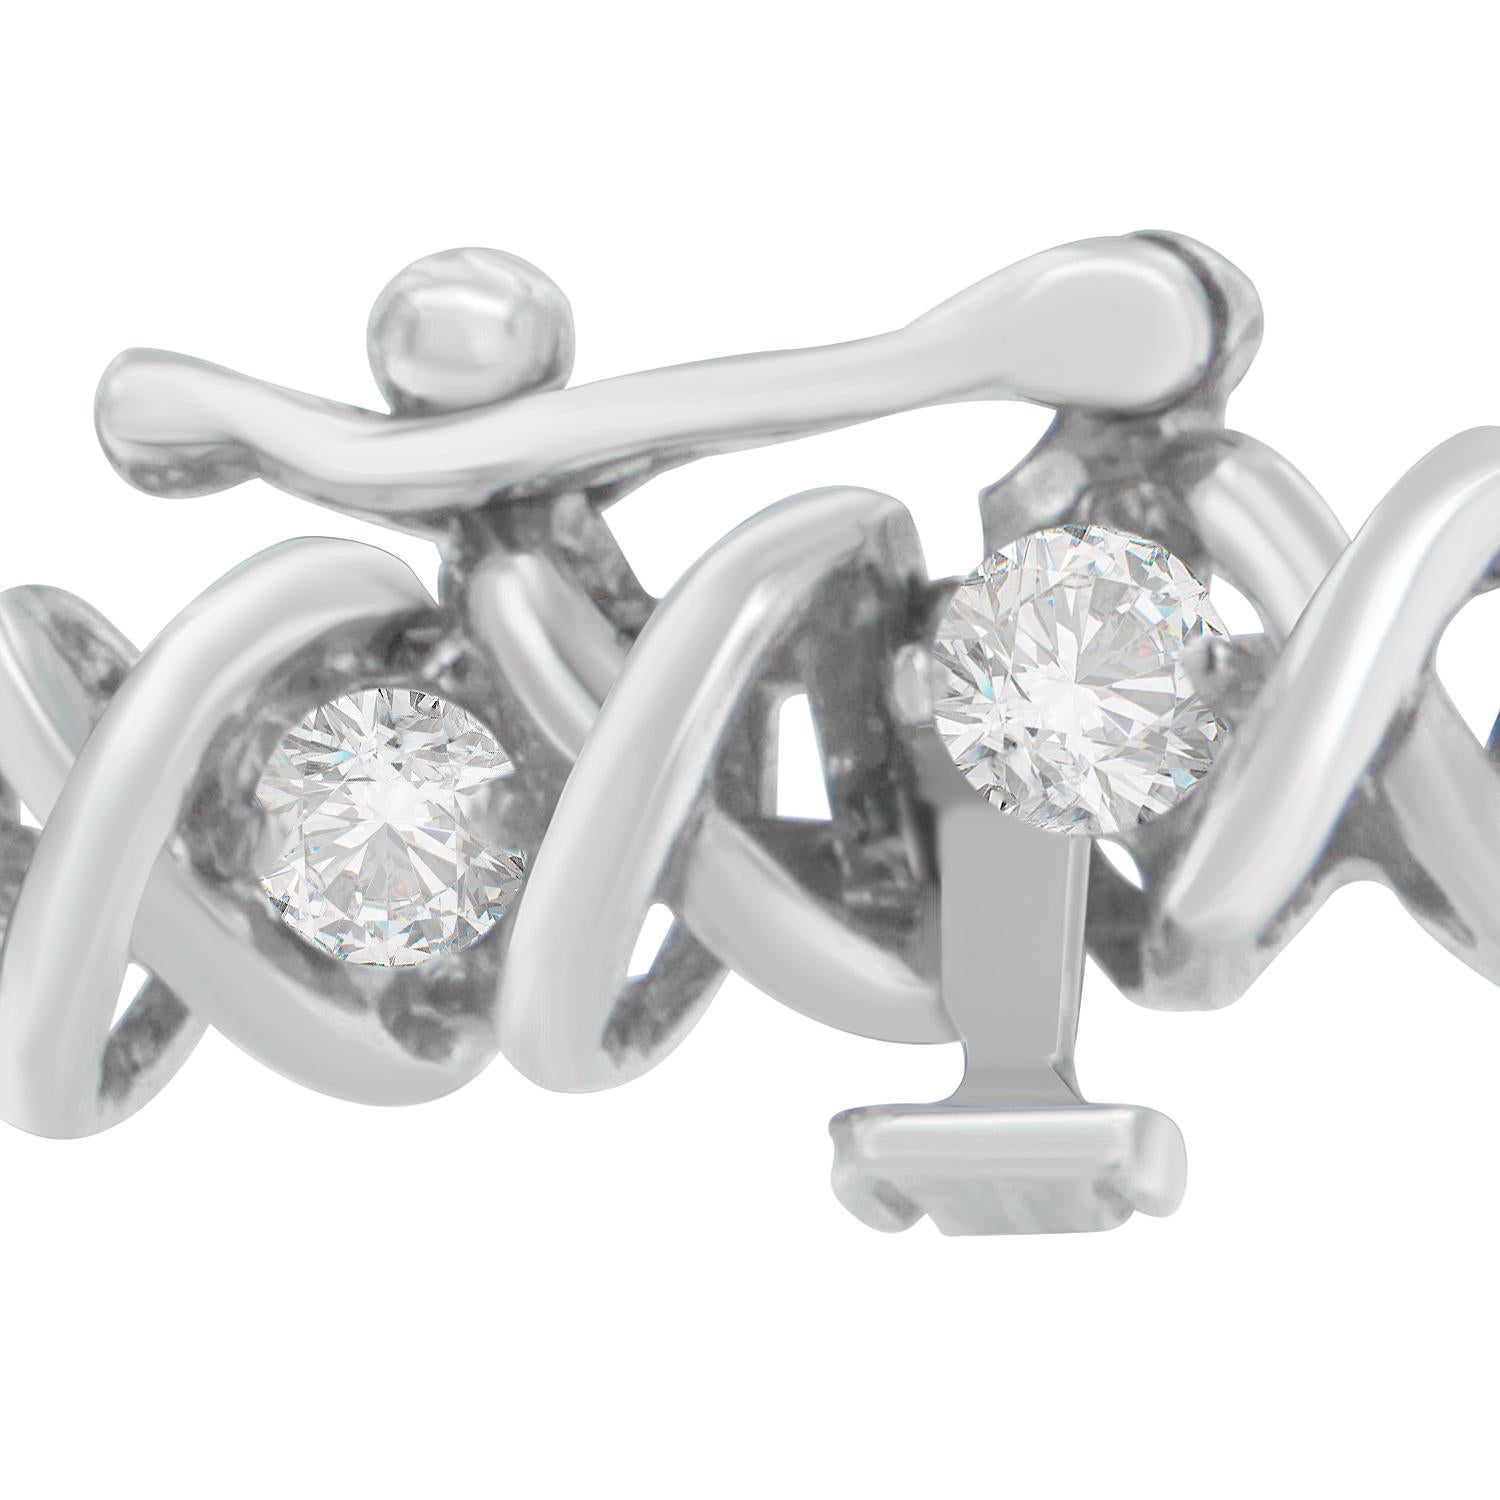 Apportez du charme à votre look éblouissant en portant ce séduisant bracelet en diamants. Composé d'un riche or blanc 18 carats, le bracelet de style tennis est poli à la perfection pour briller de mille feux. Doté d'un lien en X, ce bracelet